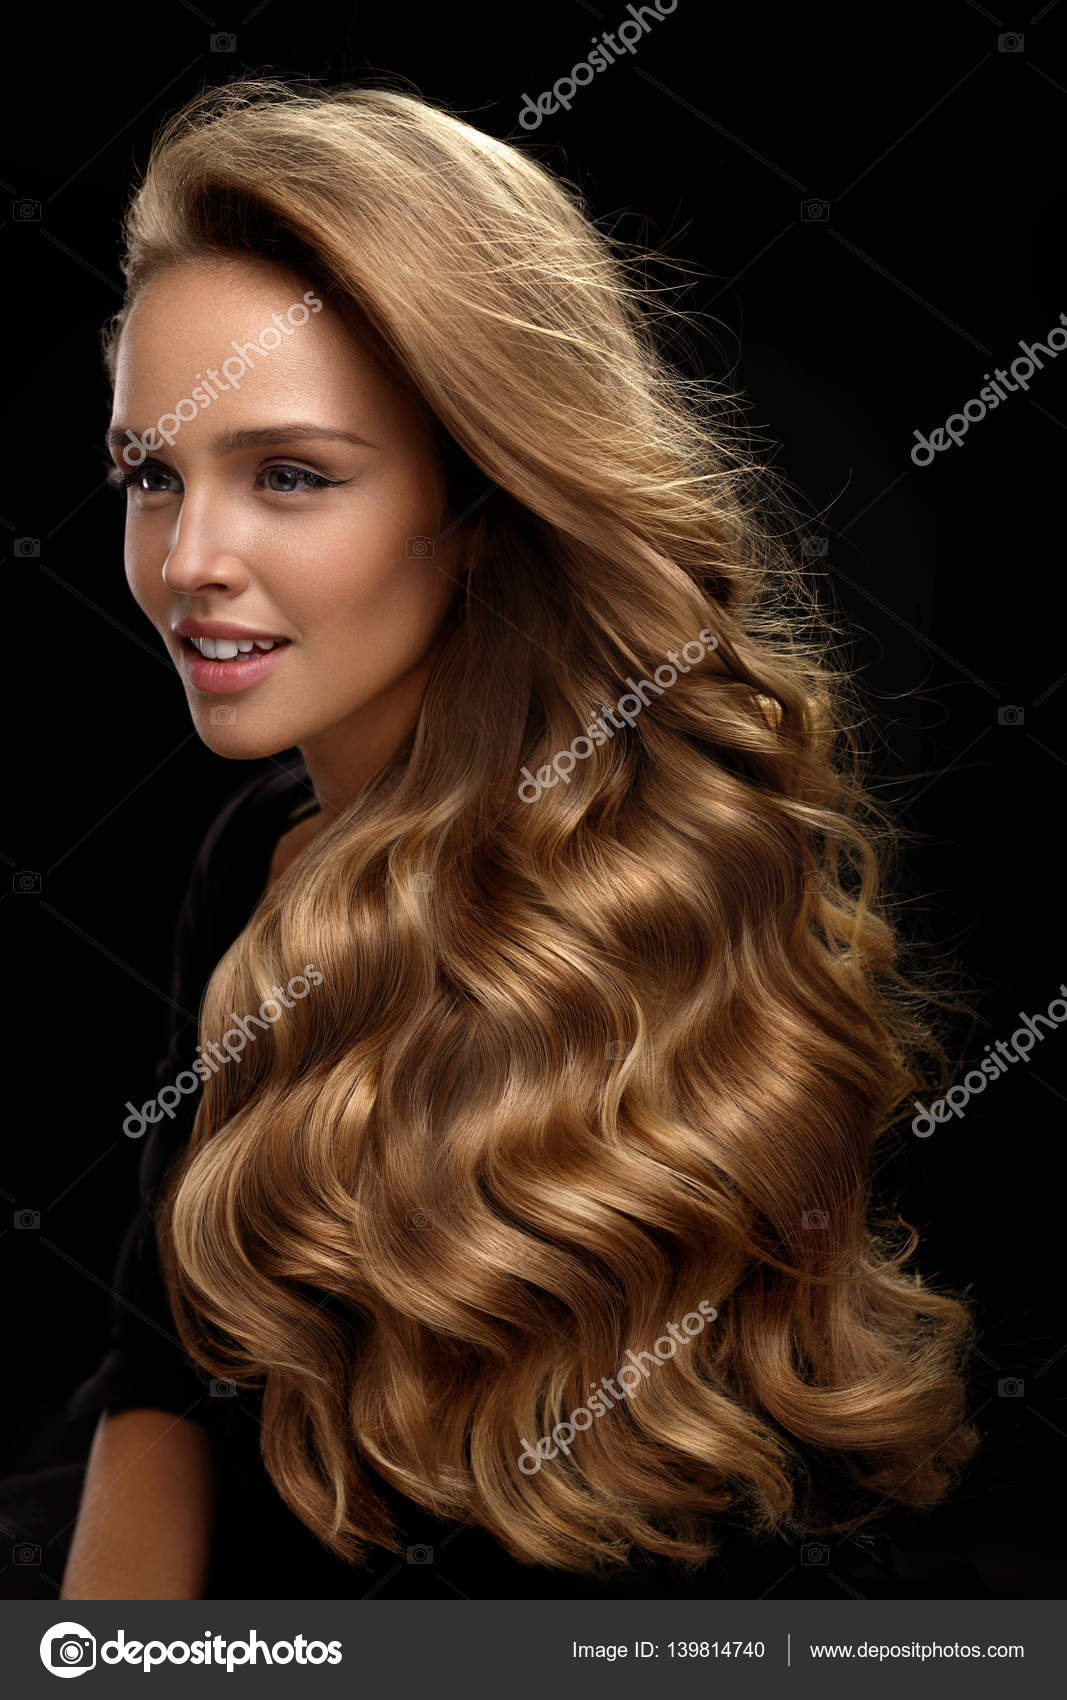 Cabelo castanho saudável. mulher bonita com cabelo lindo. penteado.